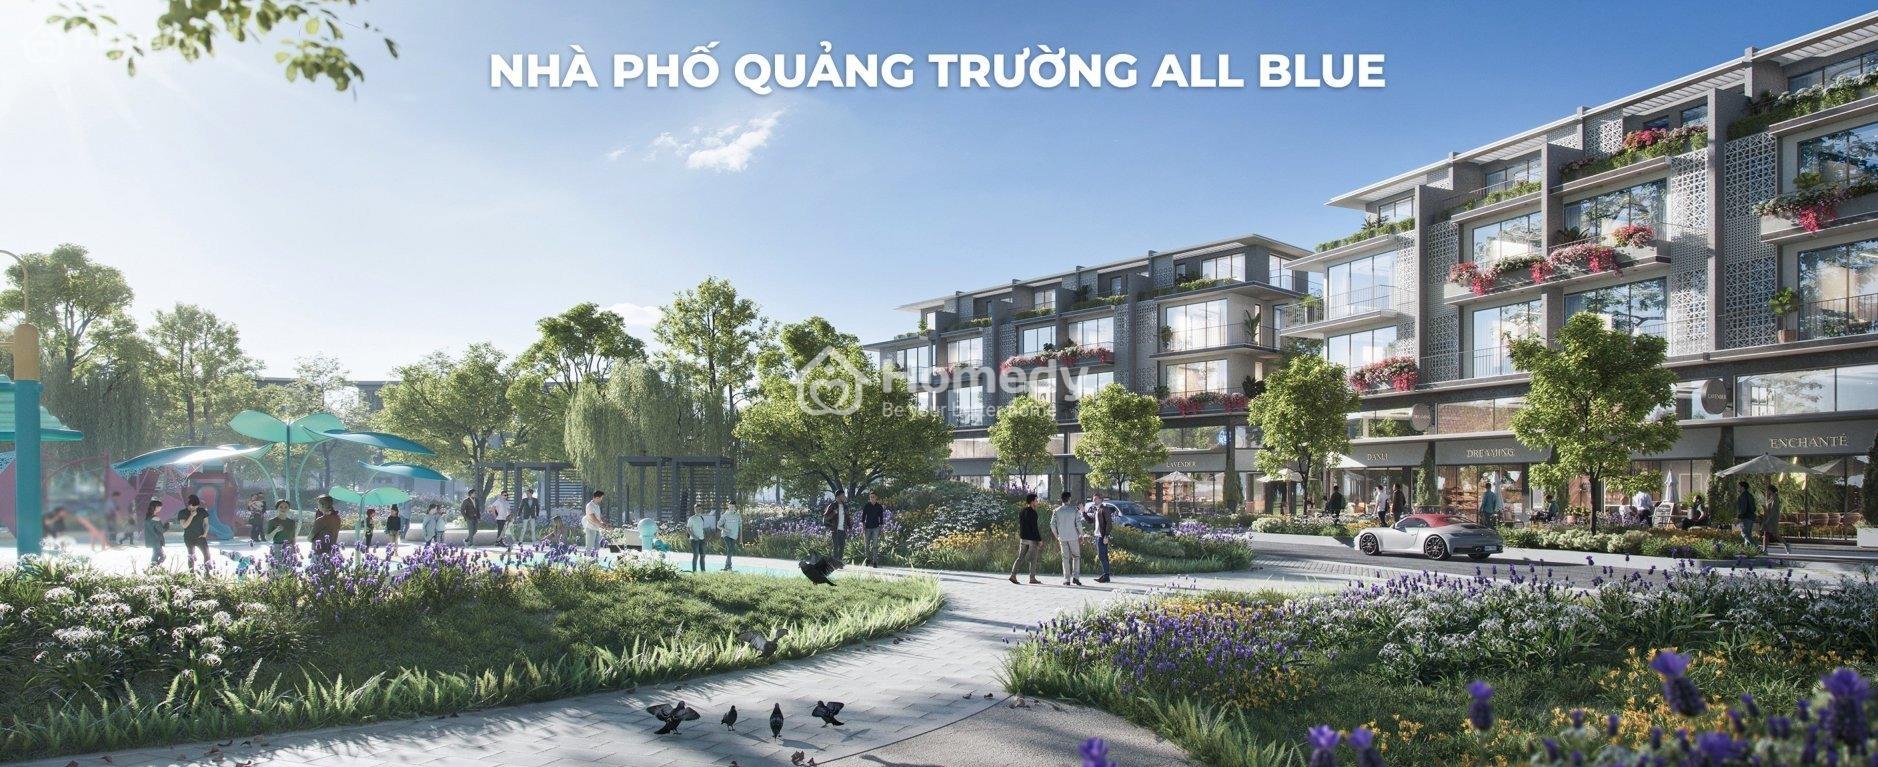 Mở Bán Phân Khu Quảng Trường All Blue Eco Village Saigon River, Ck 15%, Tt 30%, Hỗ Trợ Ls 30 Tháng